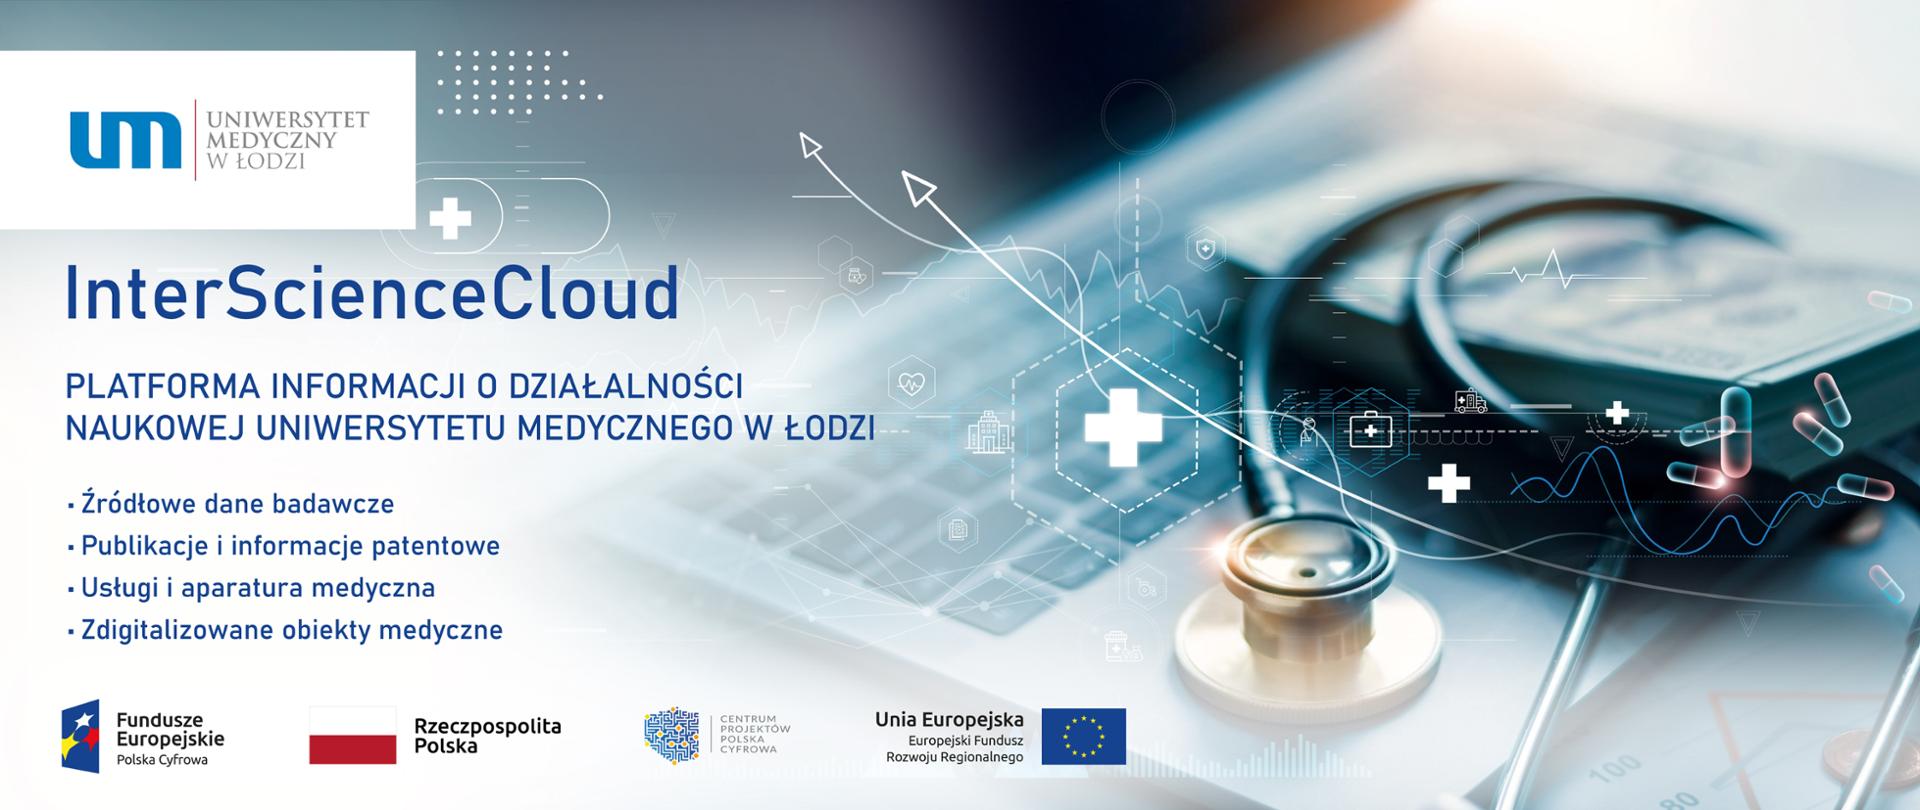 InterScienceCloud” - Zintegrowana Platforma Informacji O Działalności Naukowej Uniwersytetu Medycznego W Łodzi